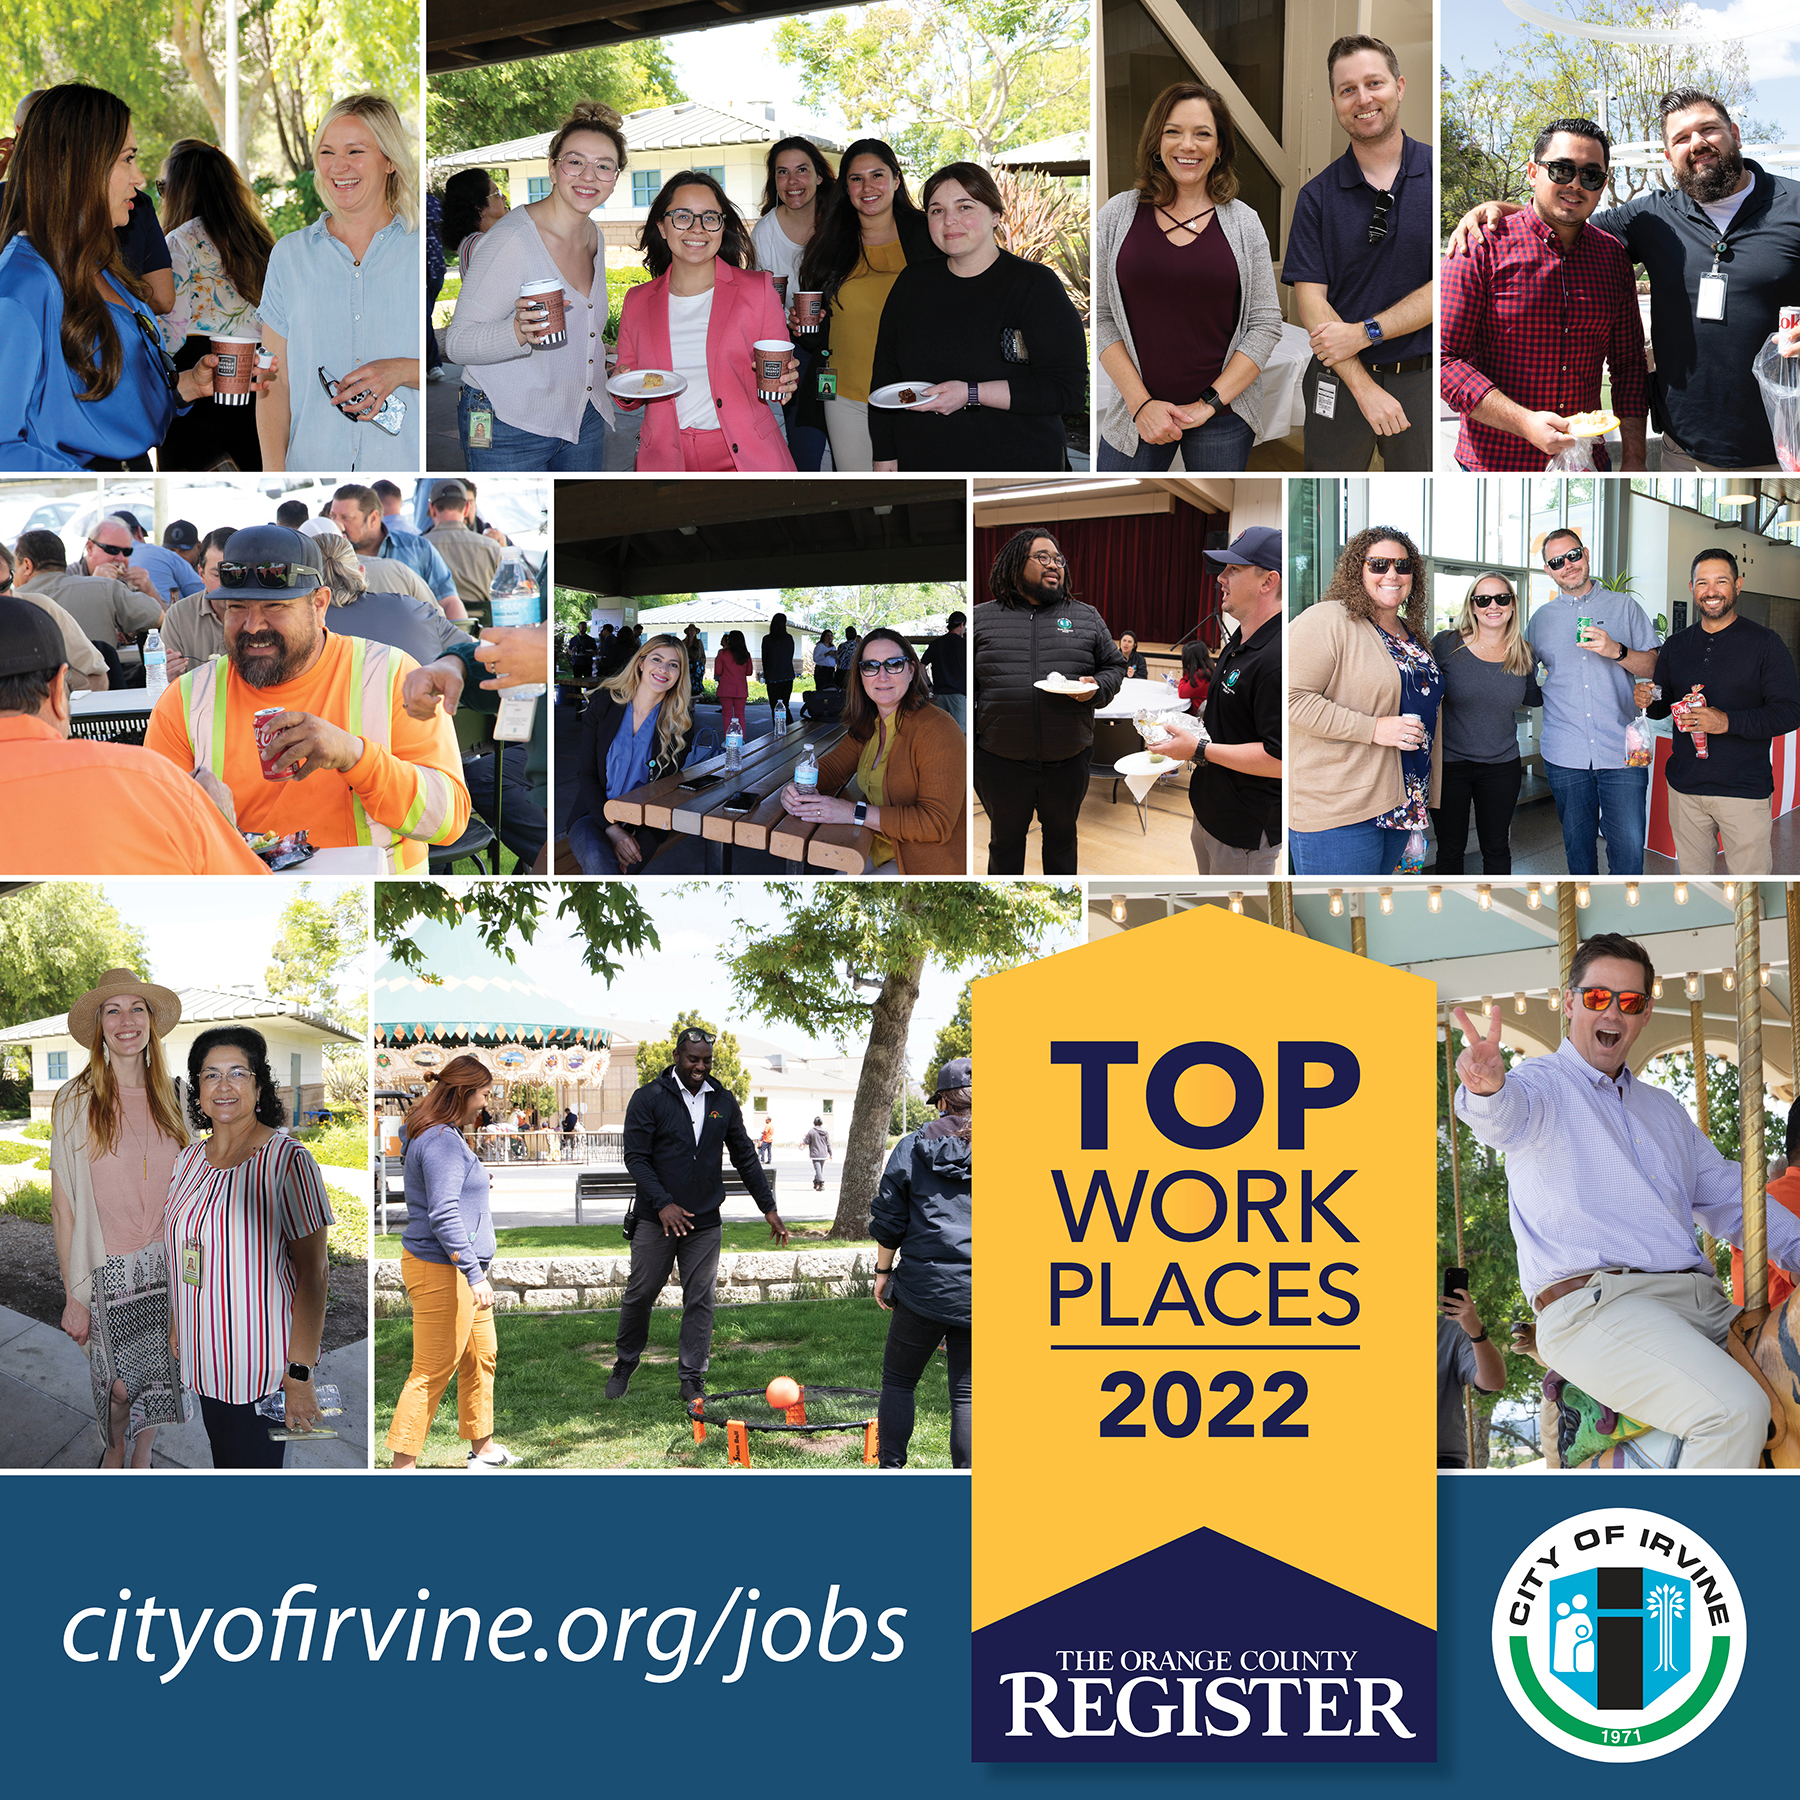 City of Irvine employees